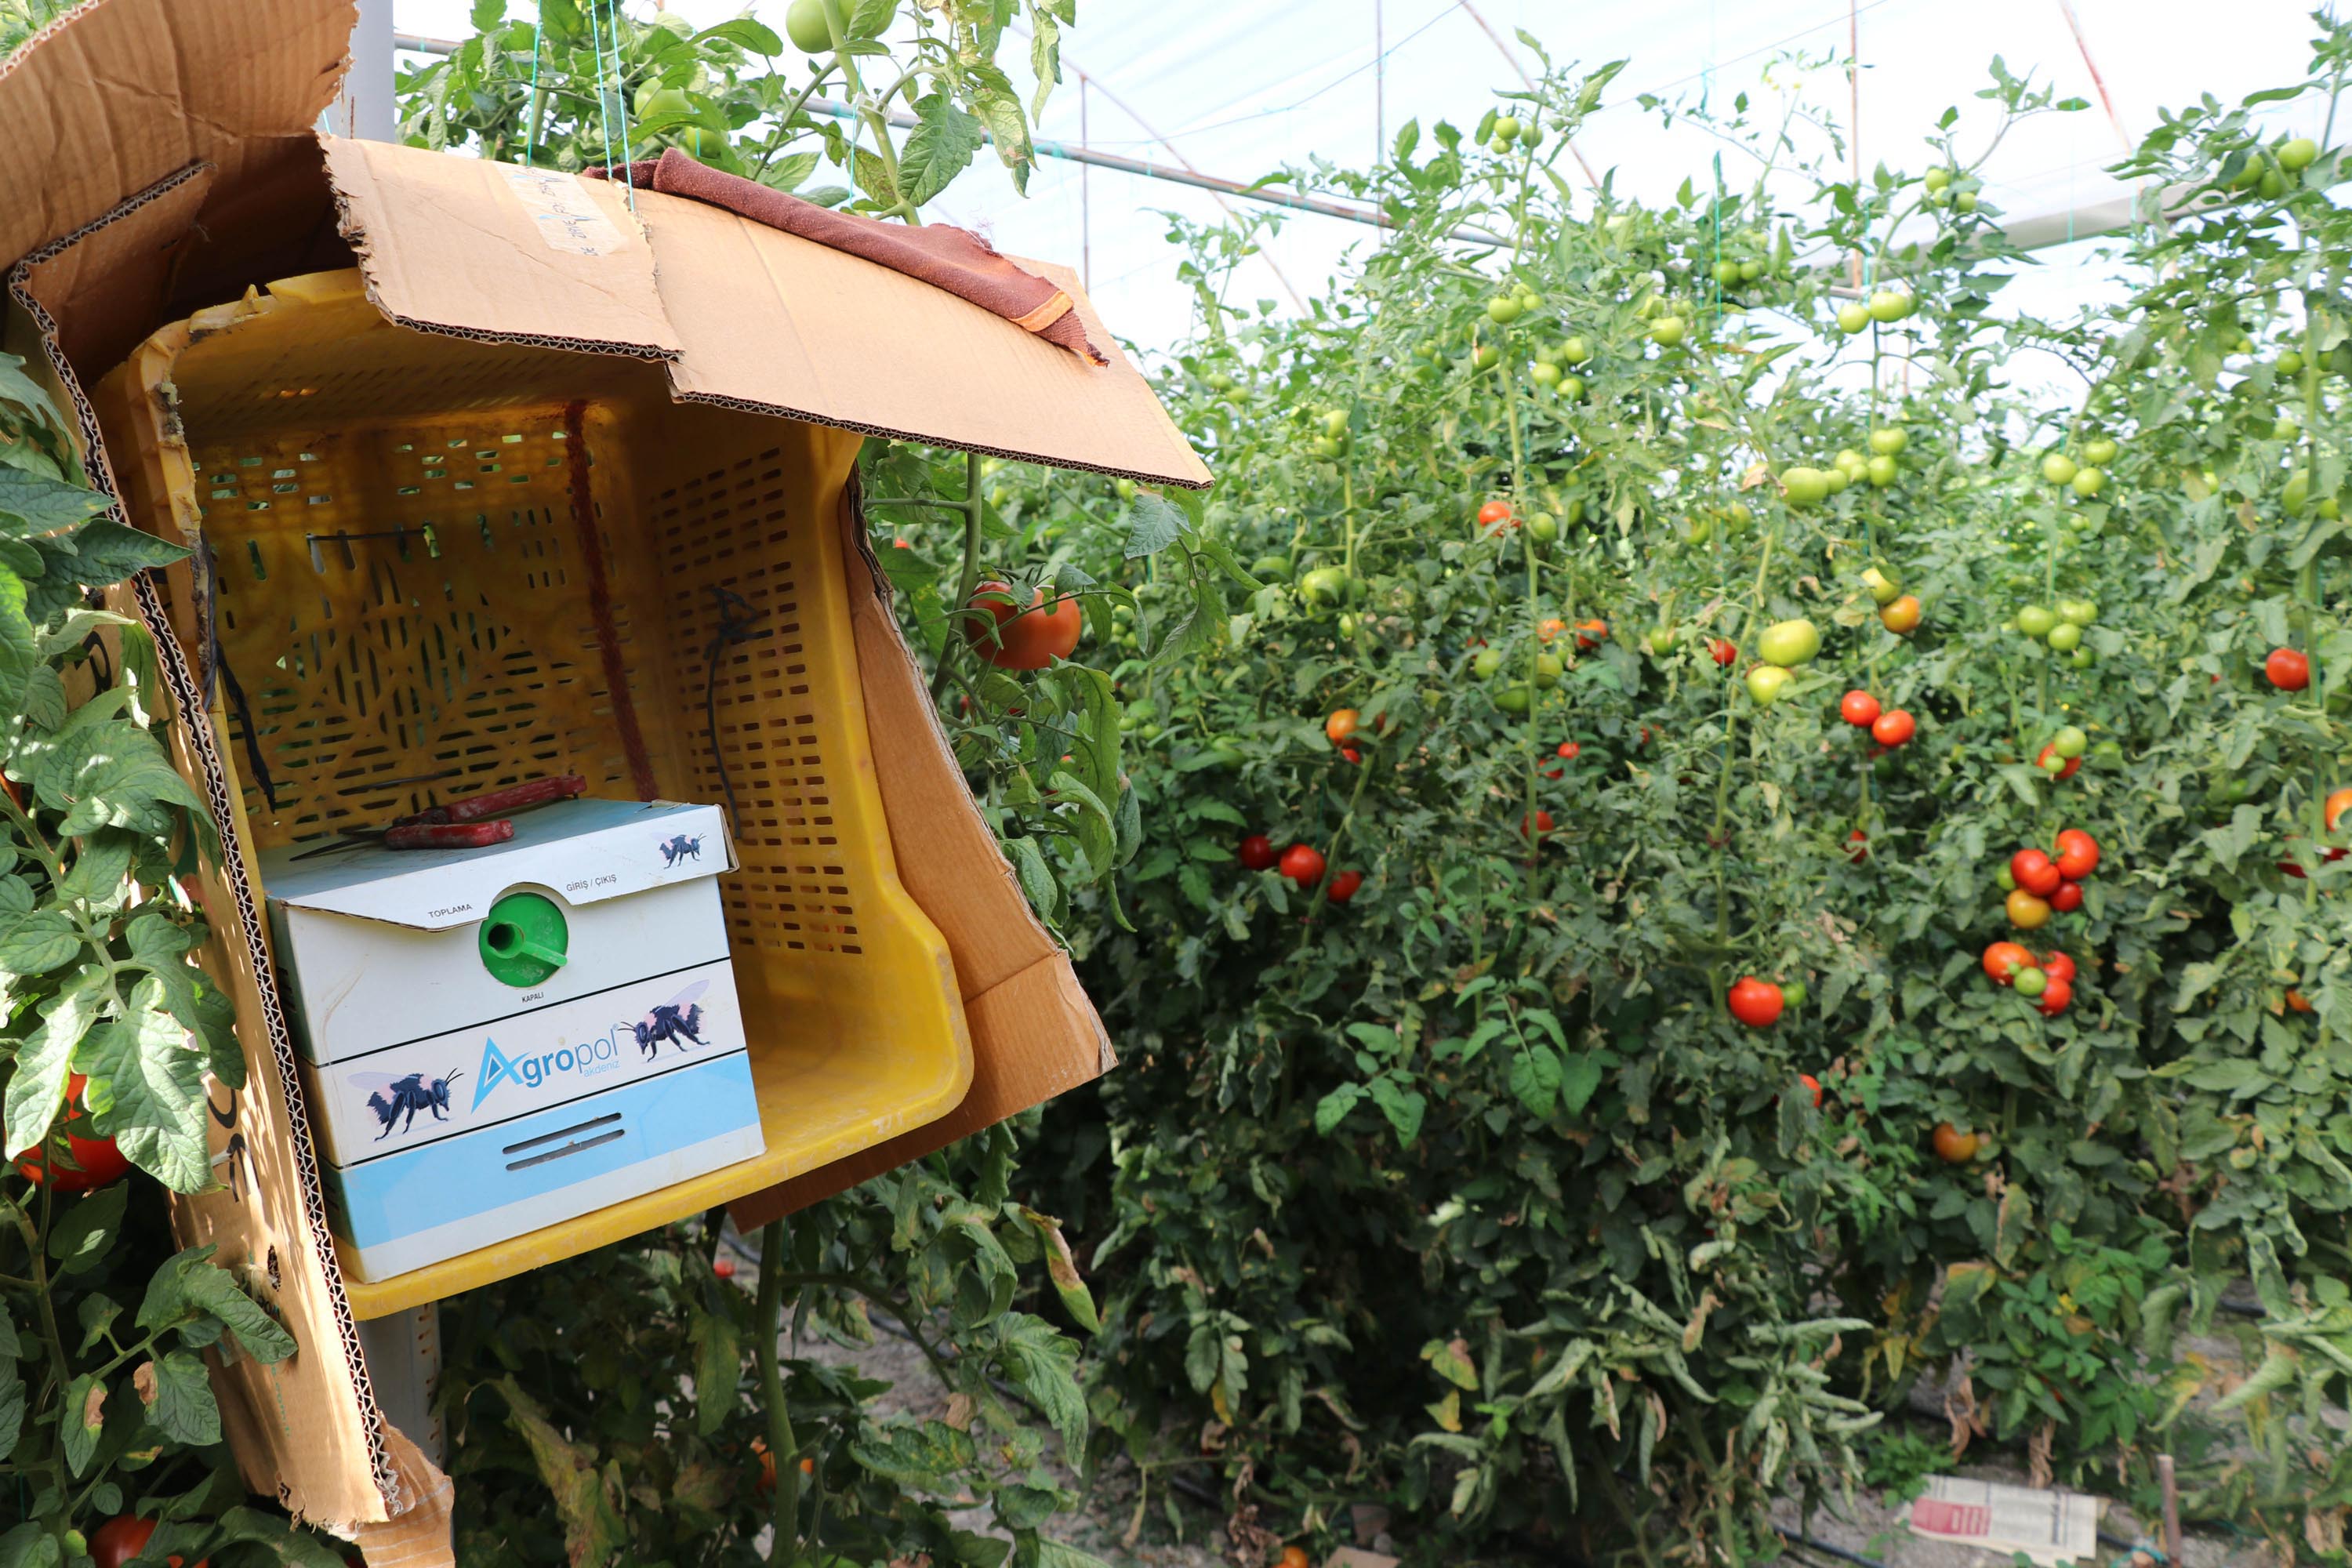 bombus-arilari-kullanilarak-yetistirilen-domateslerin-tanesi-1-kilo-geliyor-4707-dhaphoto6.jpg